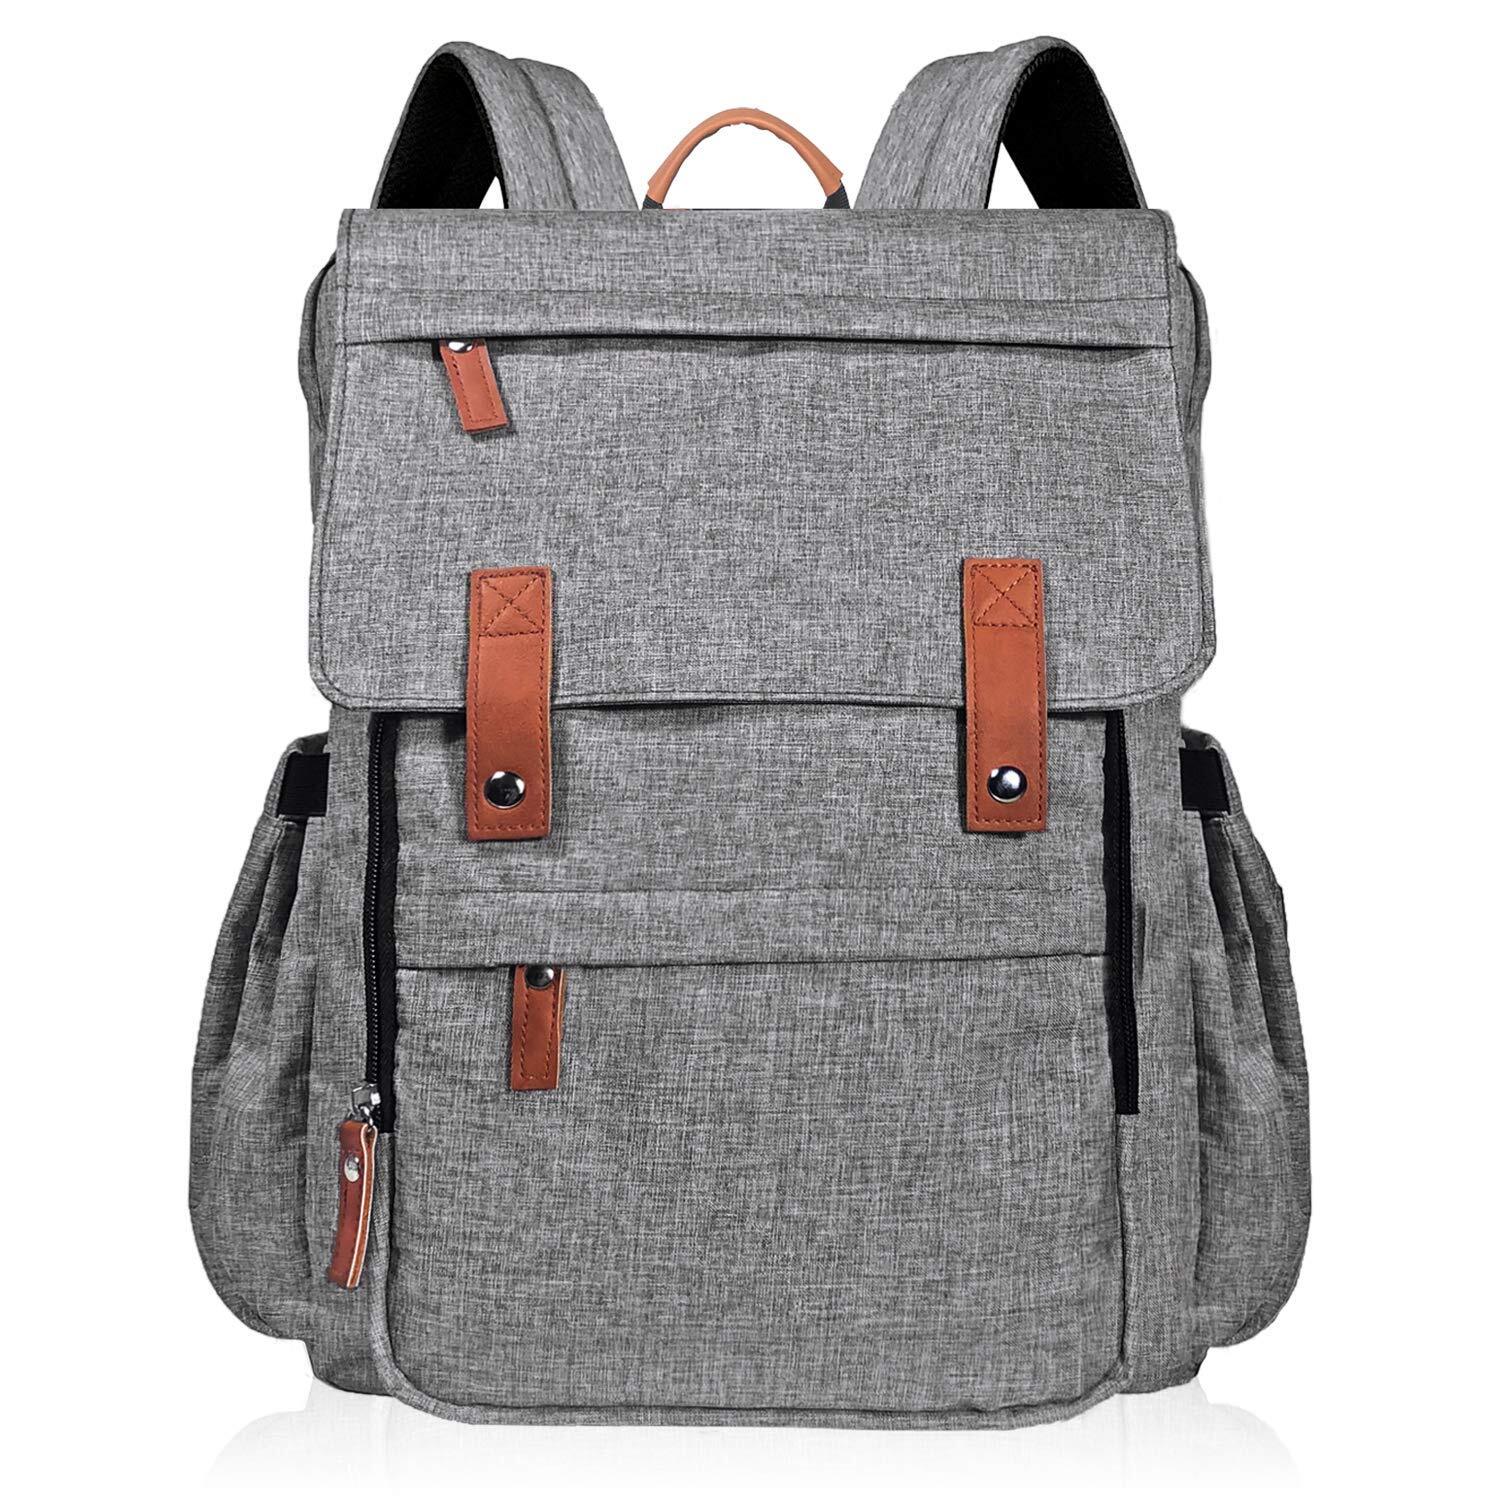 Best Hap Tim Diaper Bag Backpack Muilti-Function Waterproof Large Capacity Travel Diaper ...